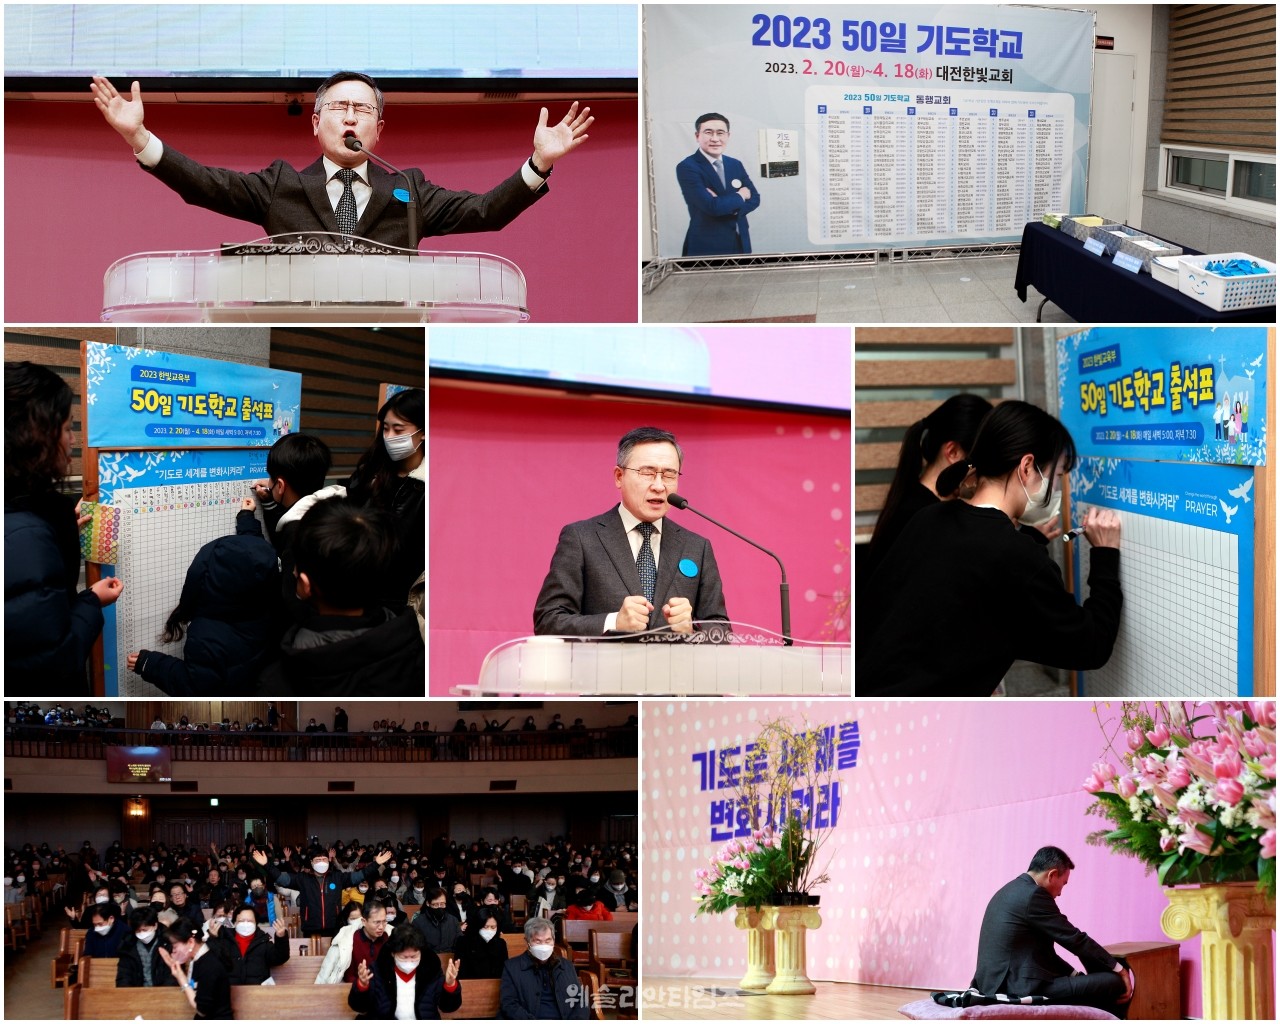 ▲ 대전 한빛교회 ‘2023 50일 기도학교’ 시작 새벽 첫날 모습